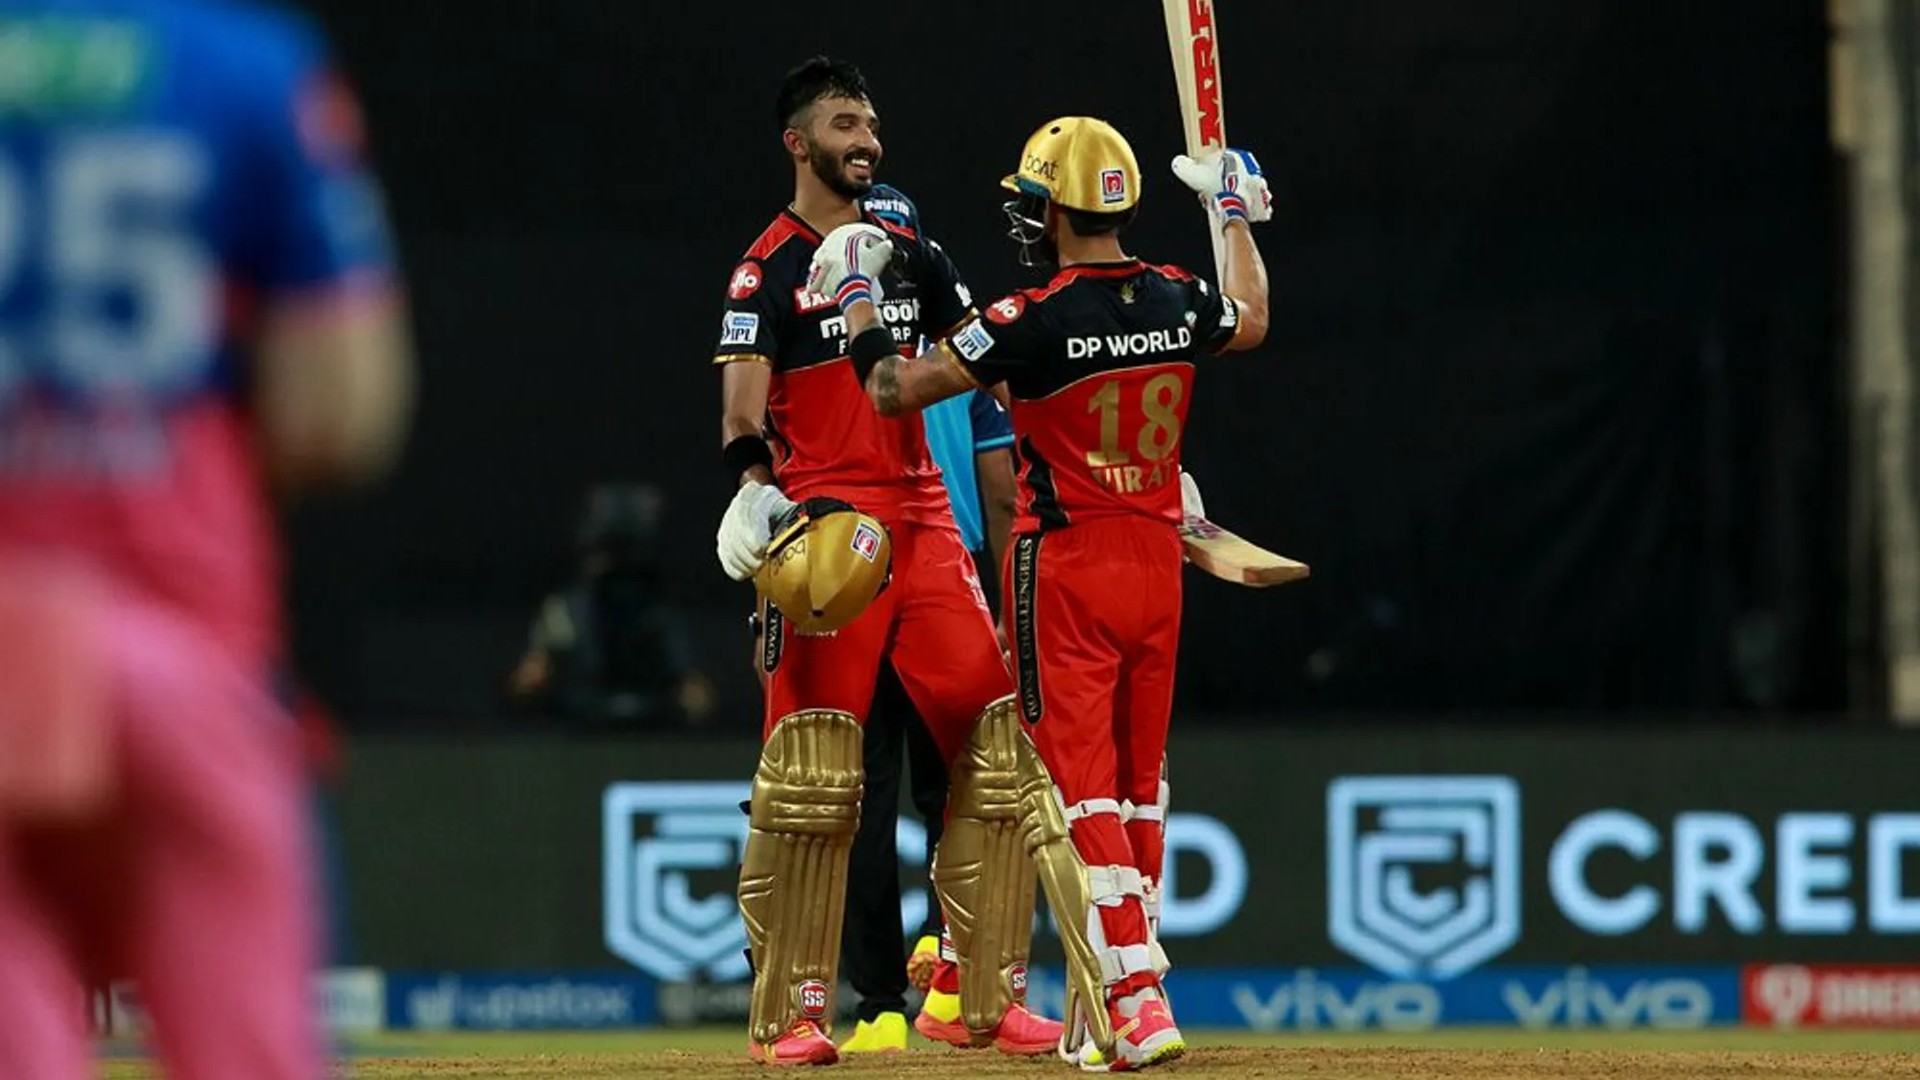 Padikkal and Kohli celebrate the win. (Image: BCCI/IPL)